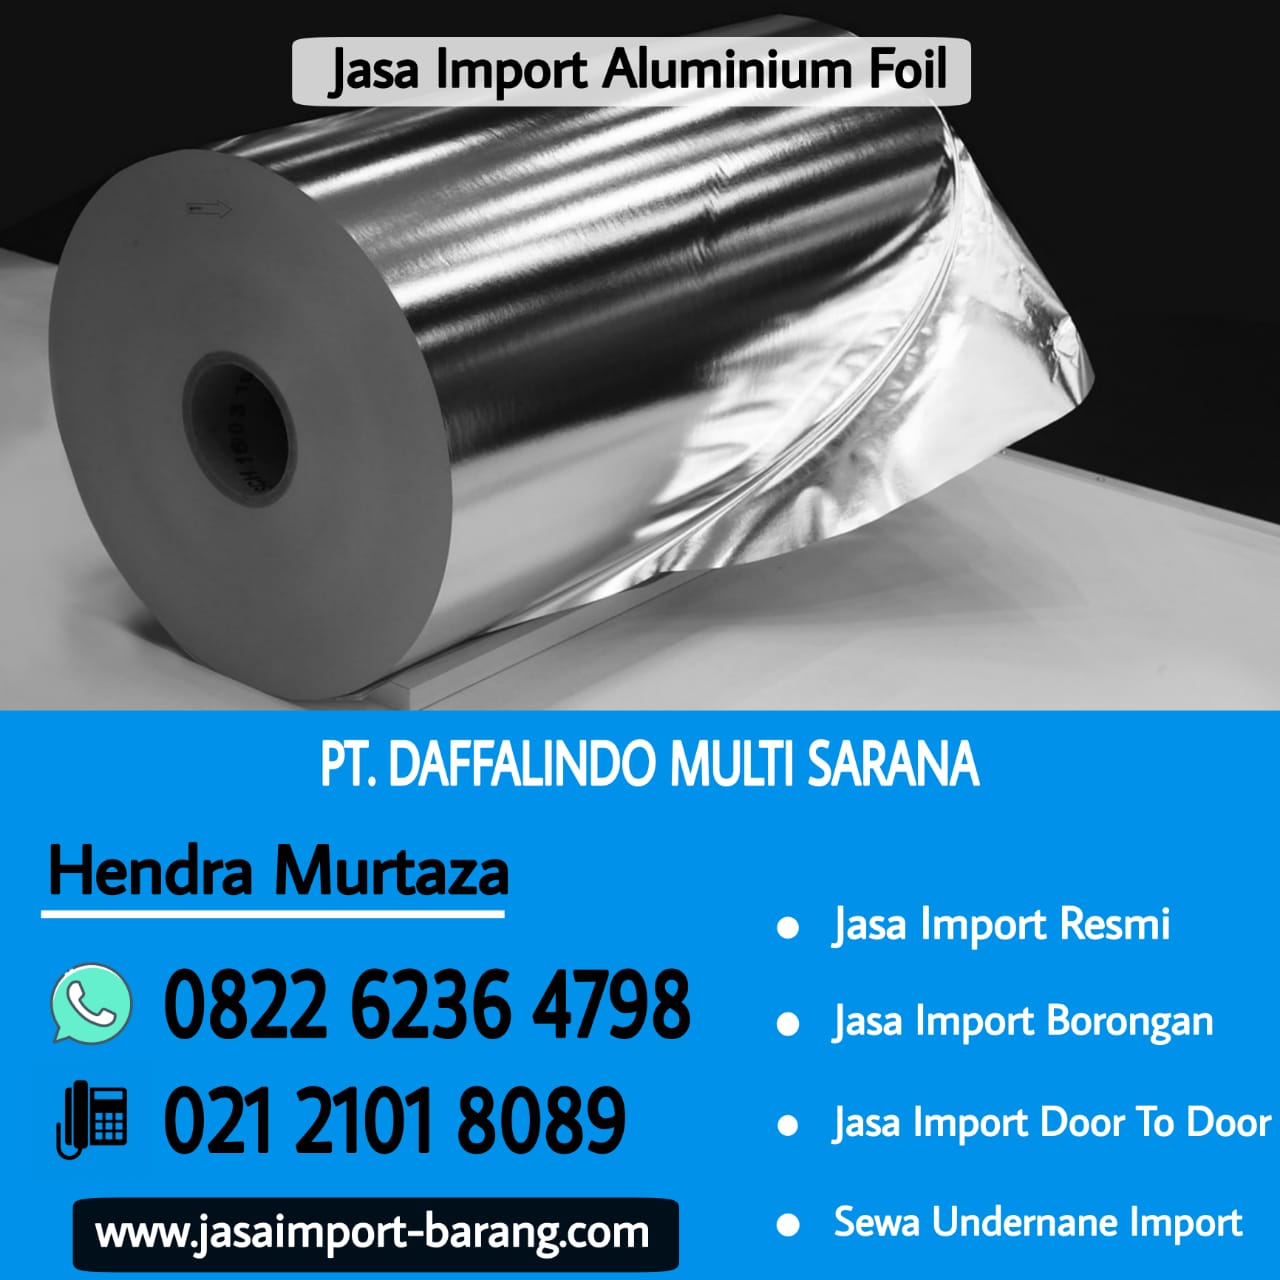 Jasa_Import_Aluminium_Foil.jpg